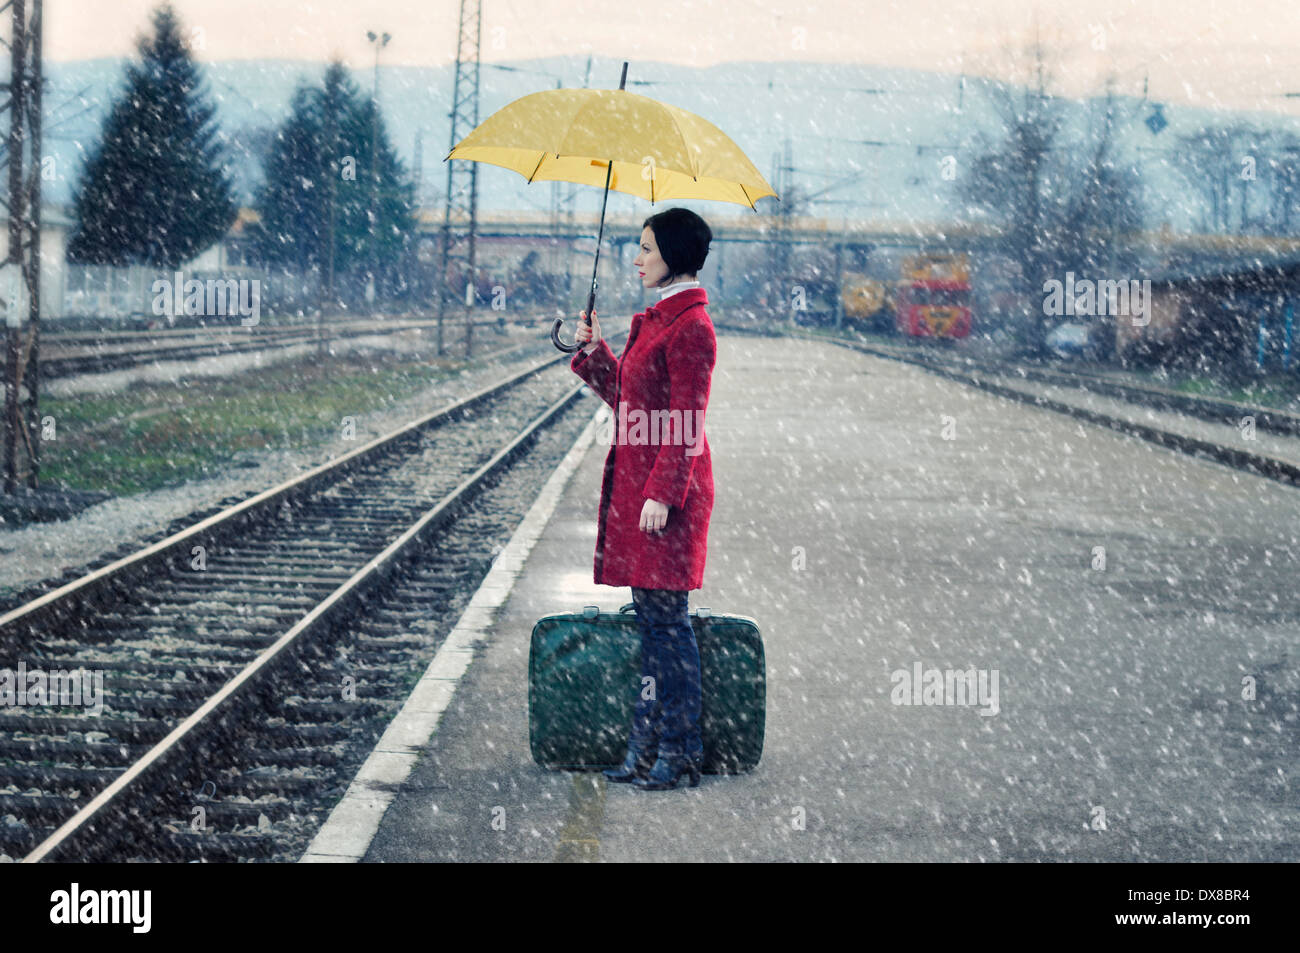 Mitte Erwachsene Frau auf Eisenbahn Bahnsteig mit Koffer hält Regenschirm Stockfoto